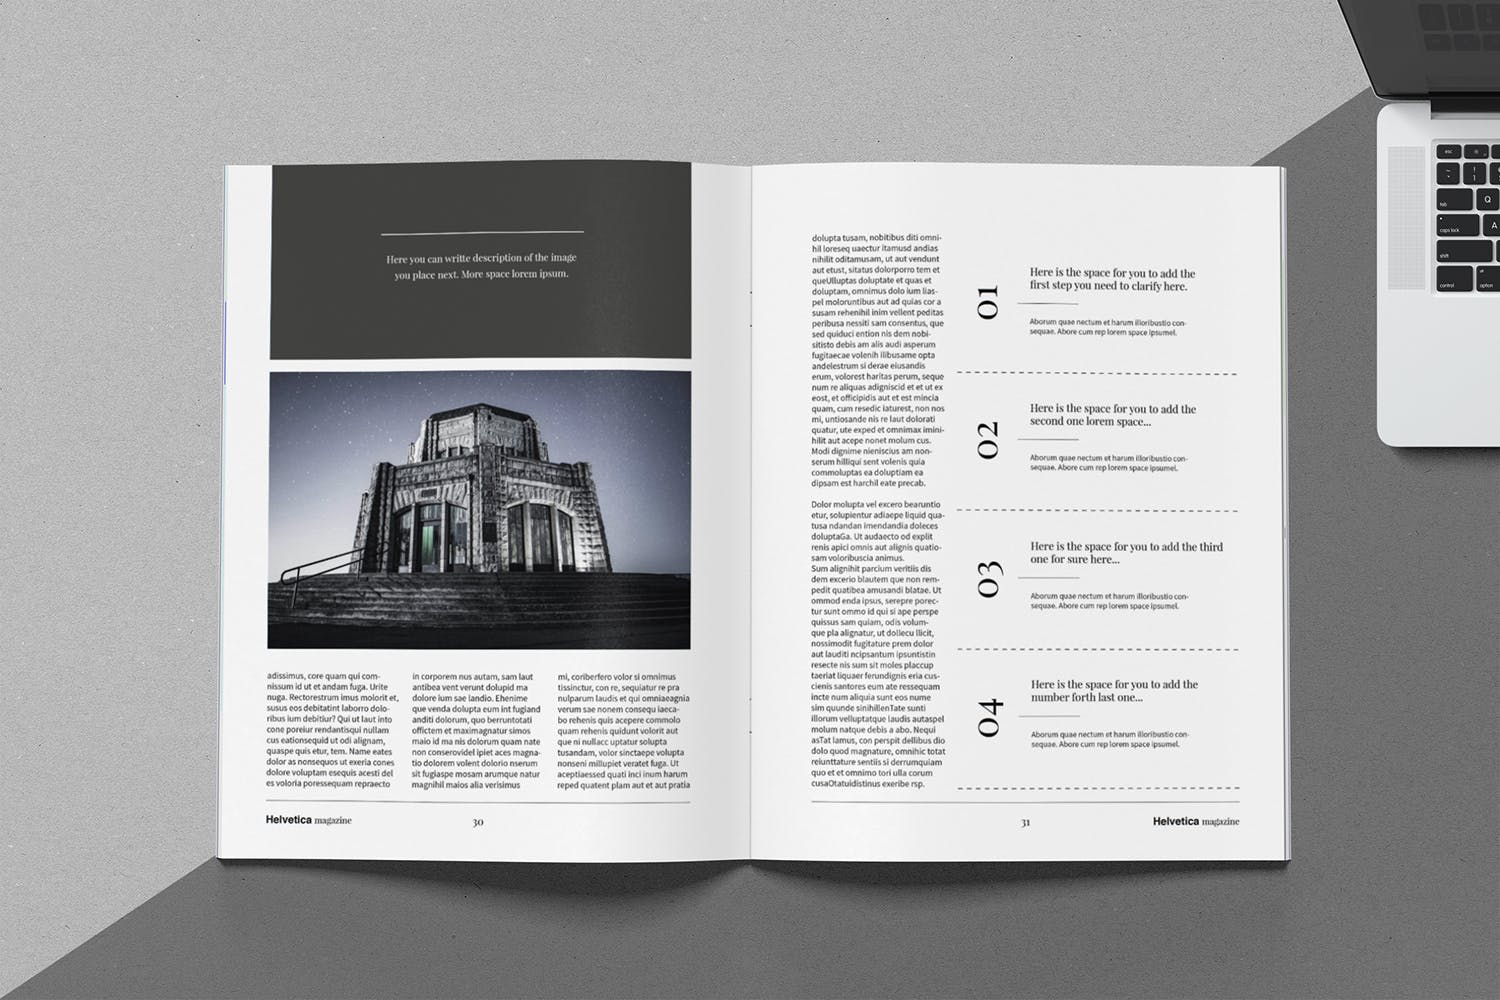 时尚行业产品评测杂志Indesign模板下载 Helvetica Magazine Indesign Template插图12